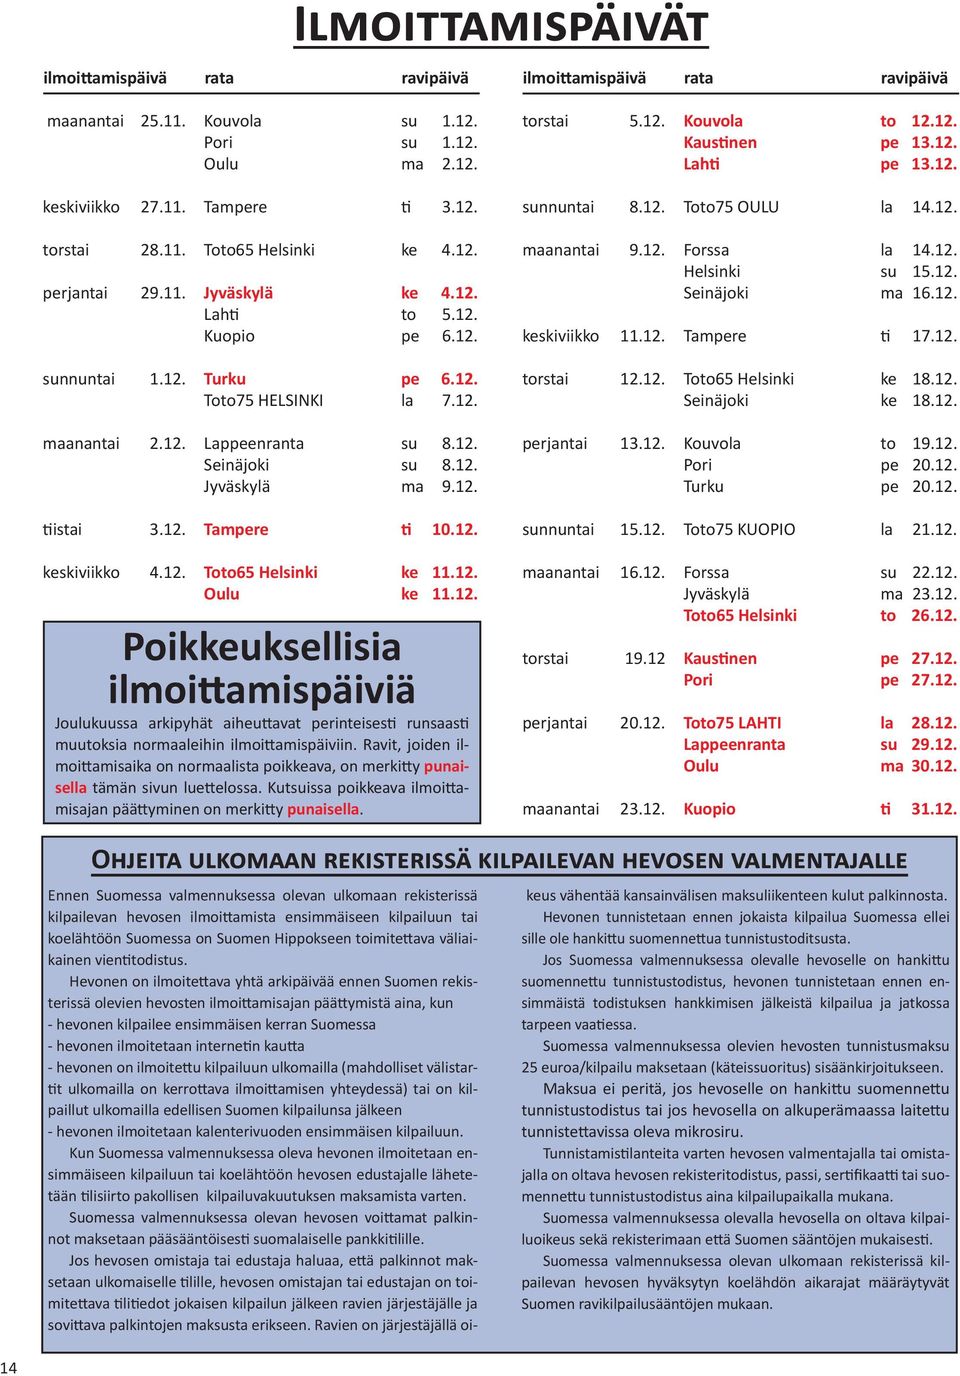 12. tiistai 3.12. Tampere ti 10.12. keskiviikko 4.12. Toto65 Helsinki ke 11.12. Oulu ke 11.12. Poikkeuksellisia ilmoittamispäiviä Joulukuussa arkipyhät aiheuttavat perinteisesti runsaasti muutoksia normaaleihin ilmoittamispäiviin.